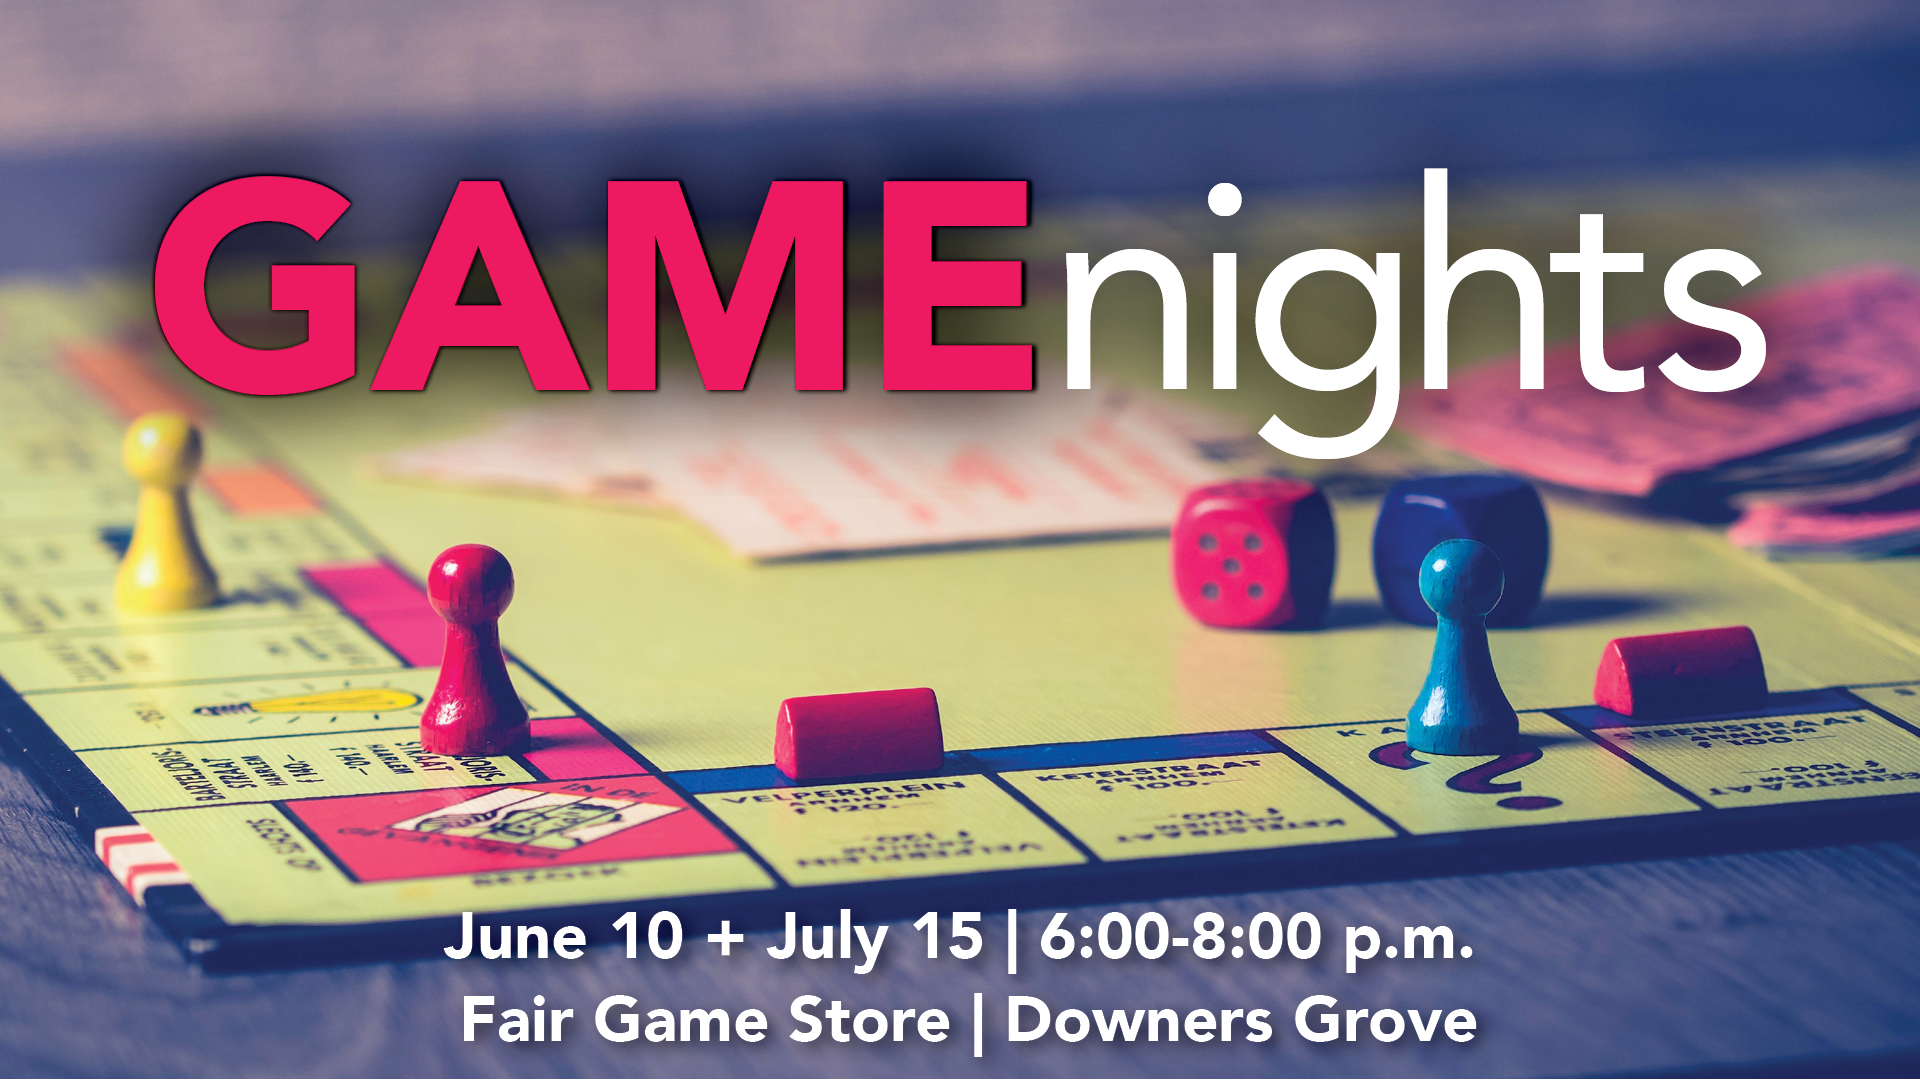 Game Nights
Sunday | July 15  | 6:00 p.m. - 8:00 p.m.
